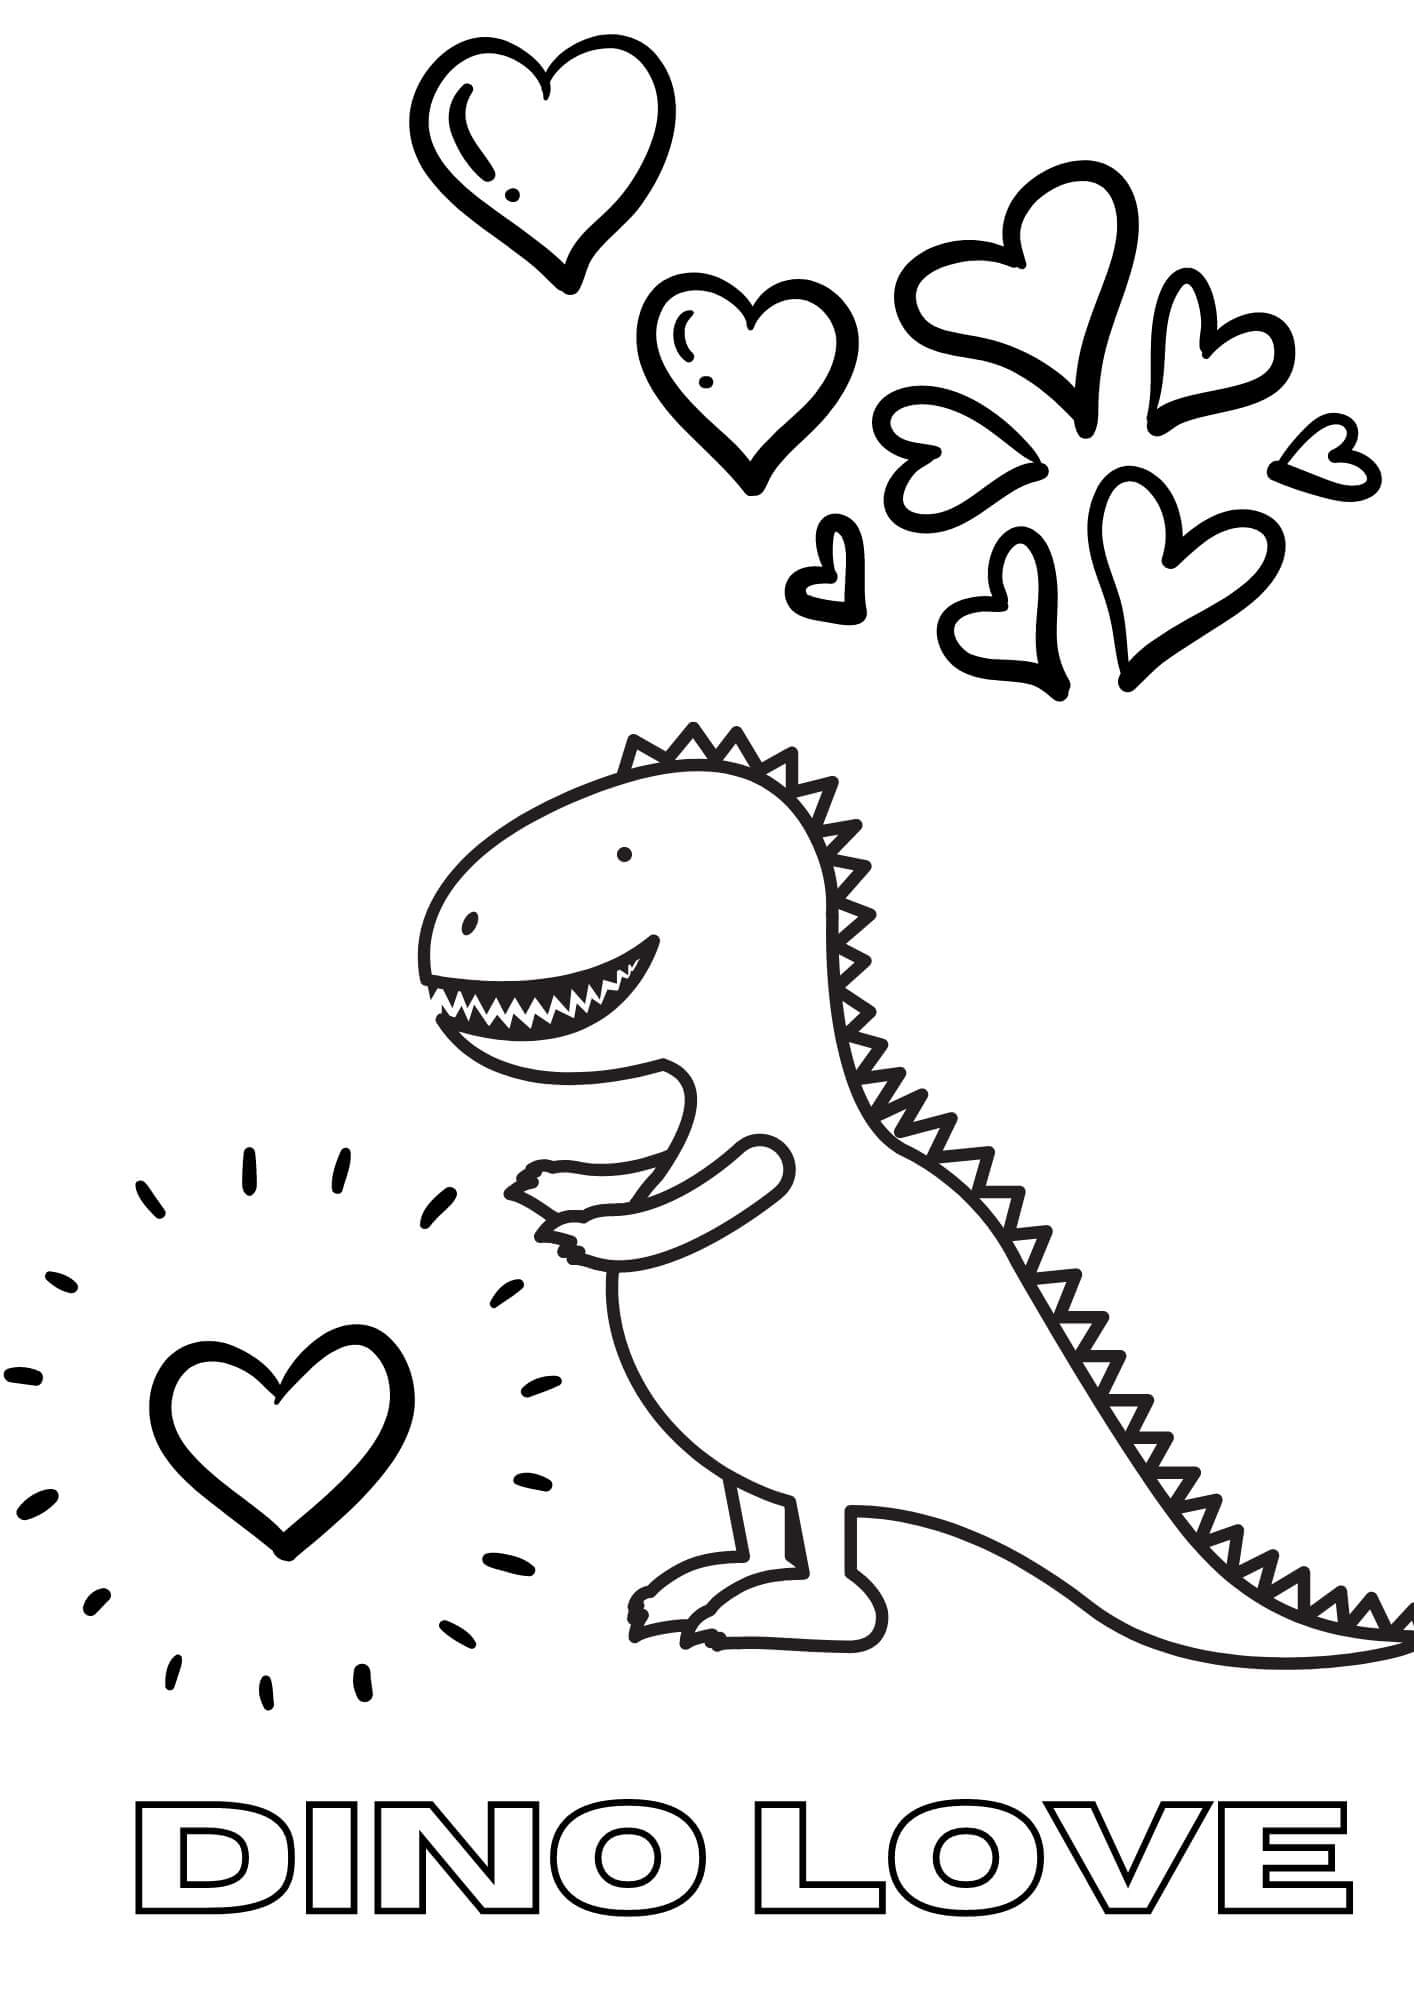 Dino Love in Valentine